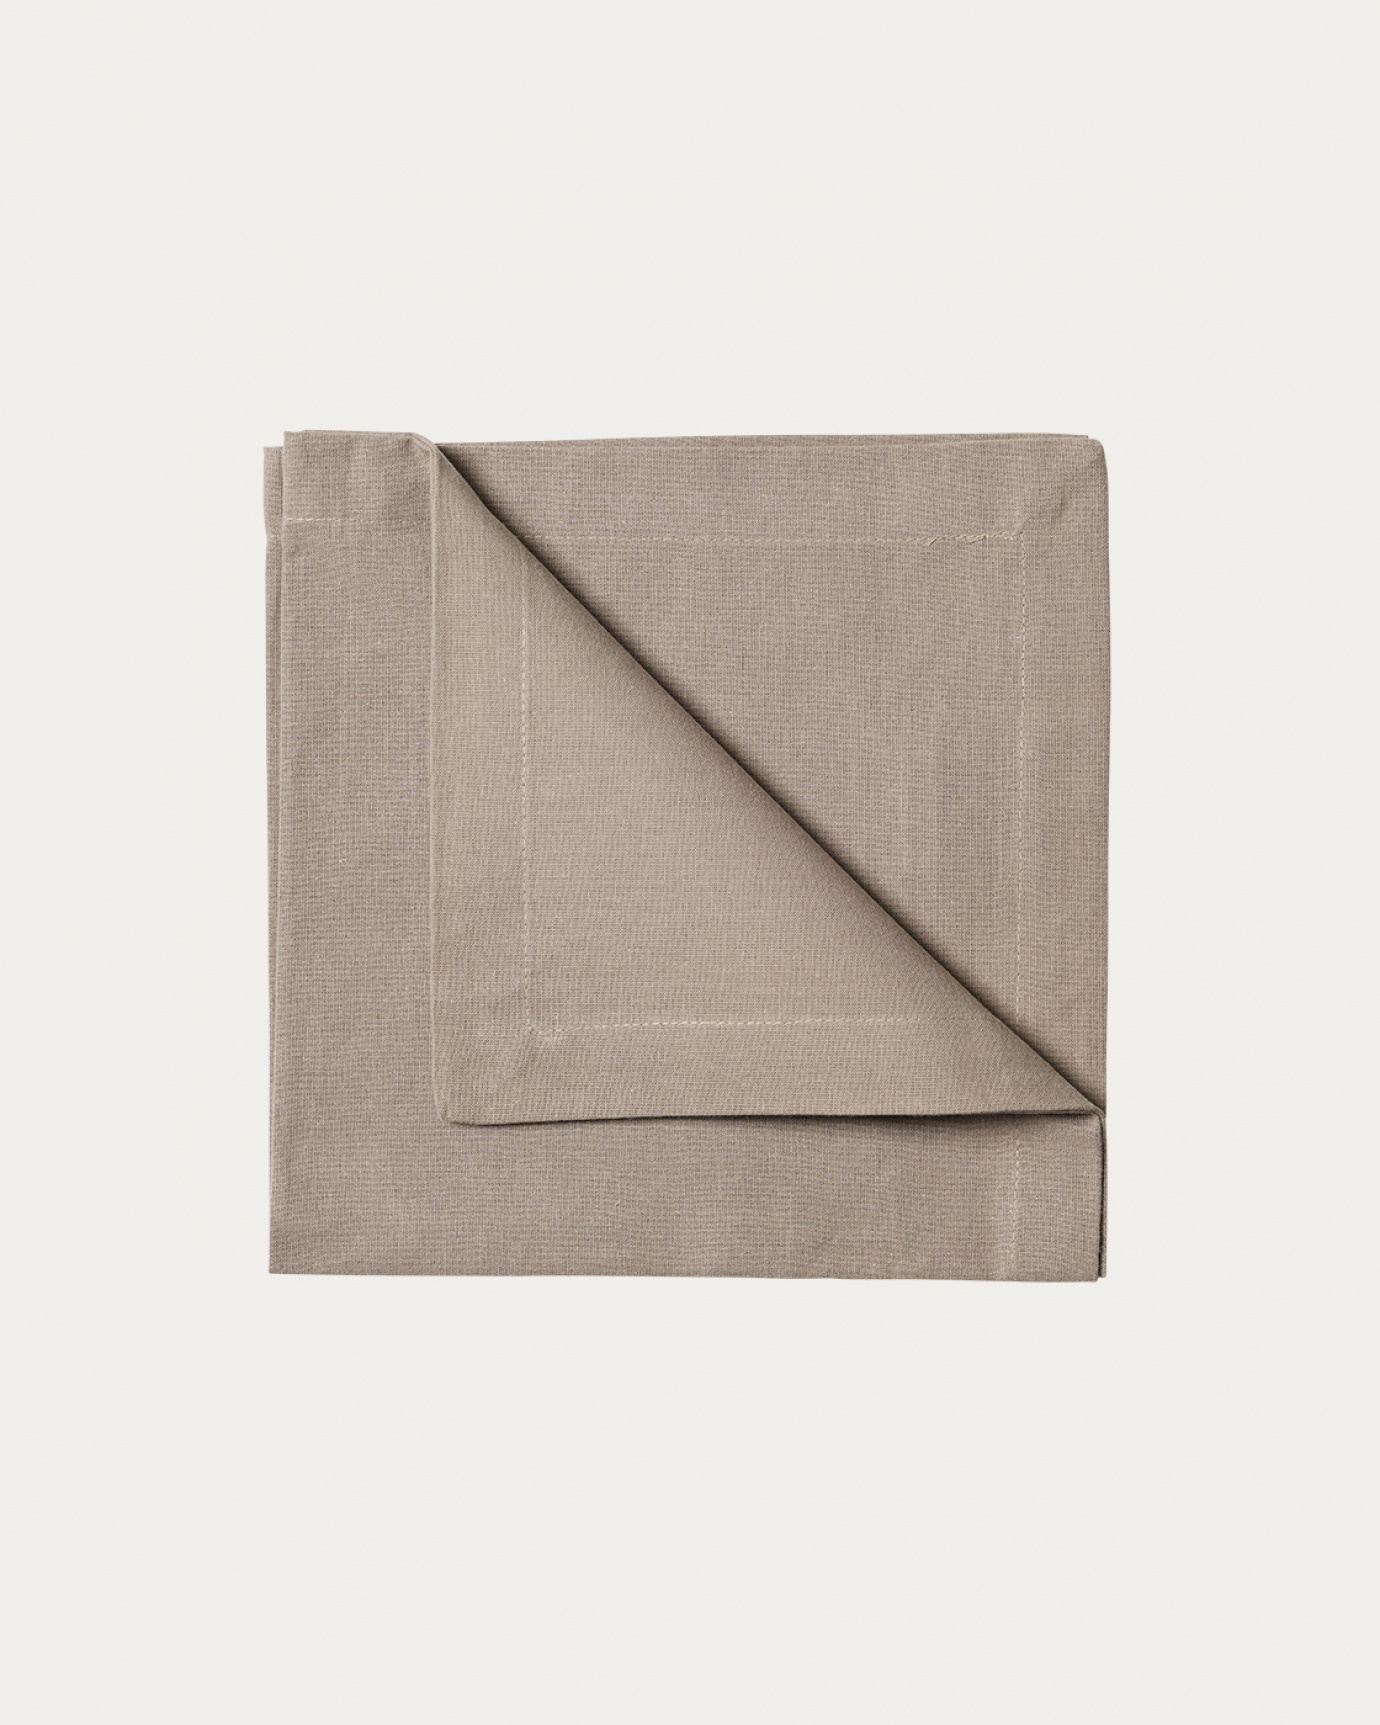 Produktbild maulwurfbraun ROBERT Serviette aus weicher Baumwolle von LINUM DESIGN. Größe 45x45 cm und in 4er-Pack verkauft.